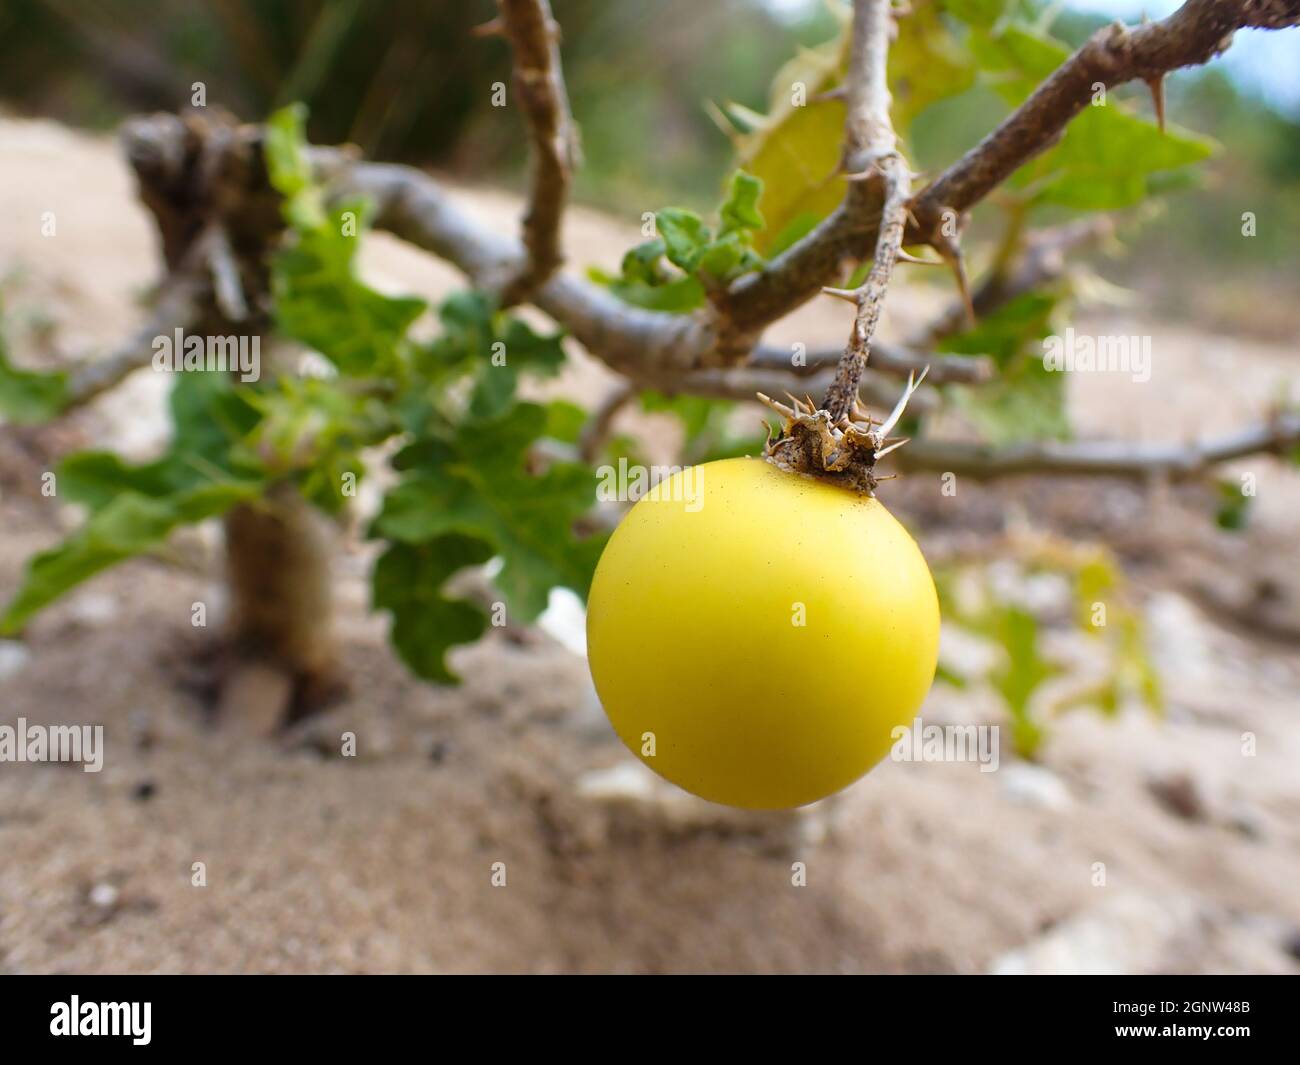 Poisonous Devil's Apple Nightshade Fruit (Solanum linnaeanum) Stock Photo